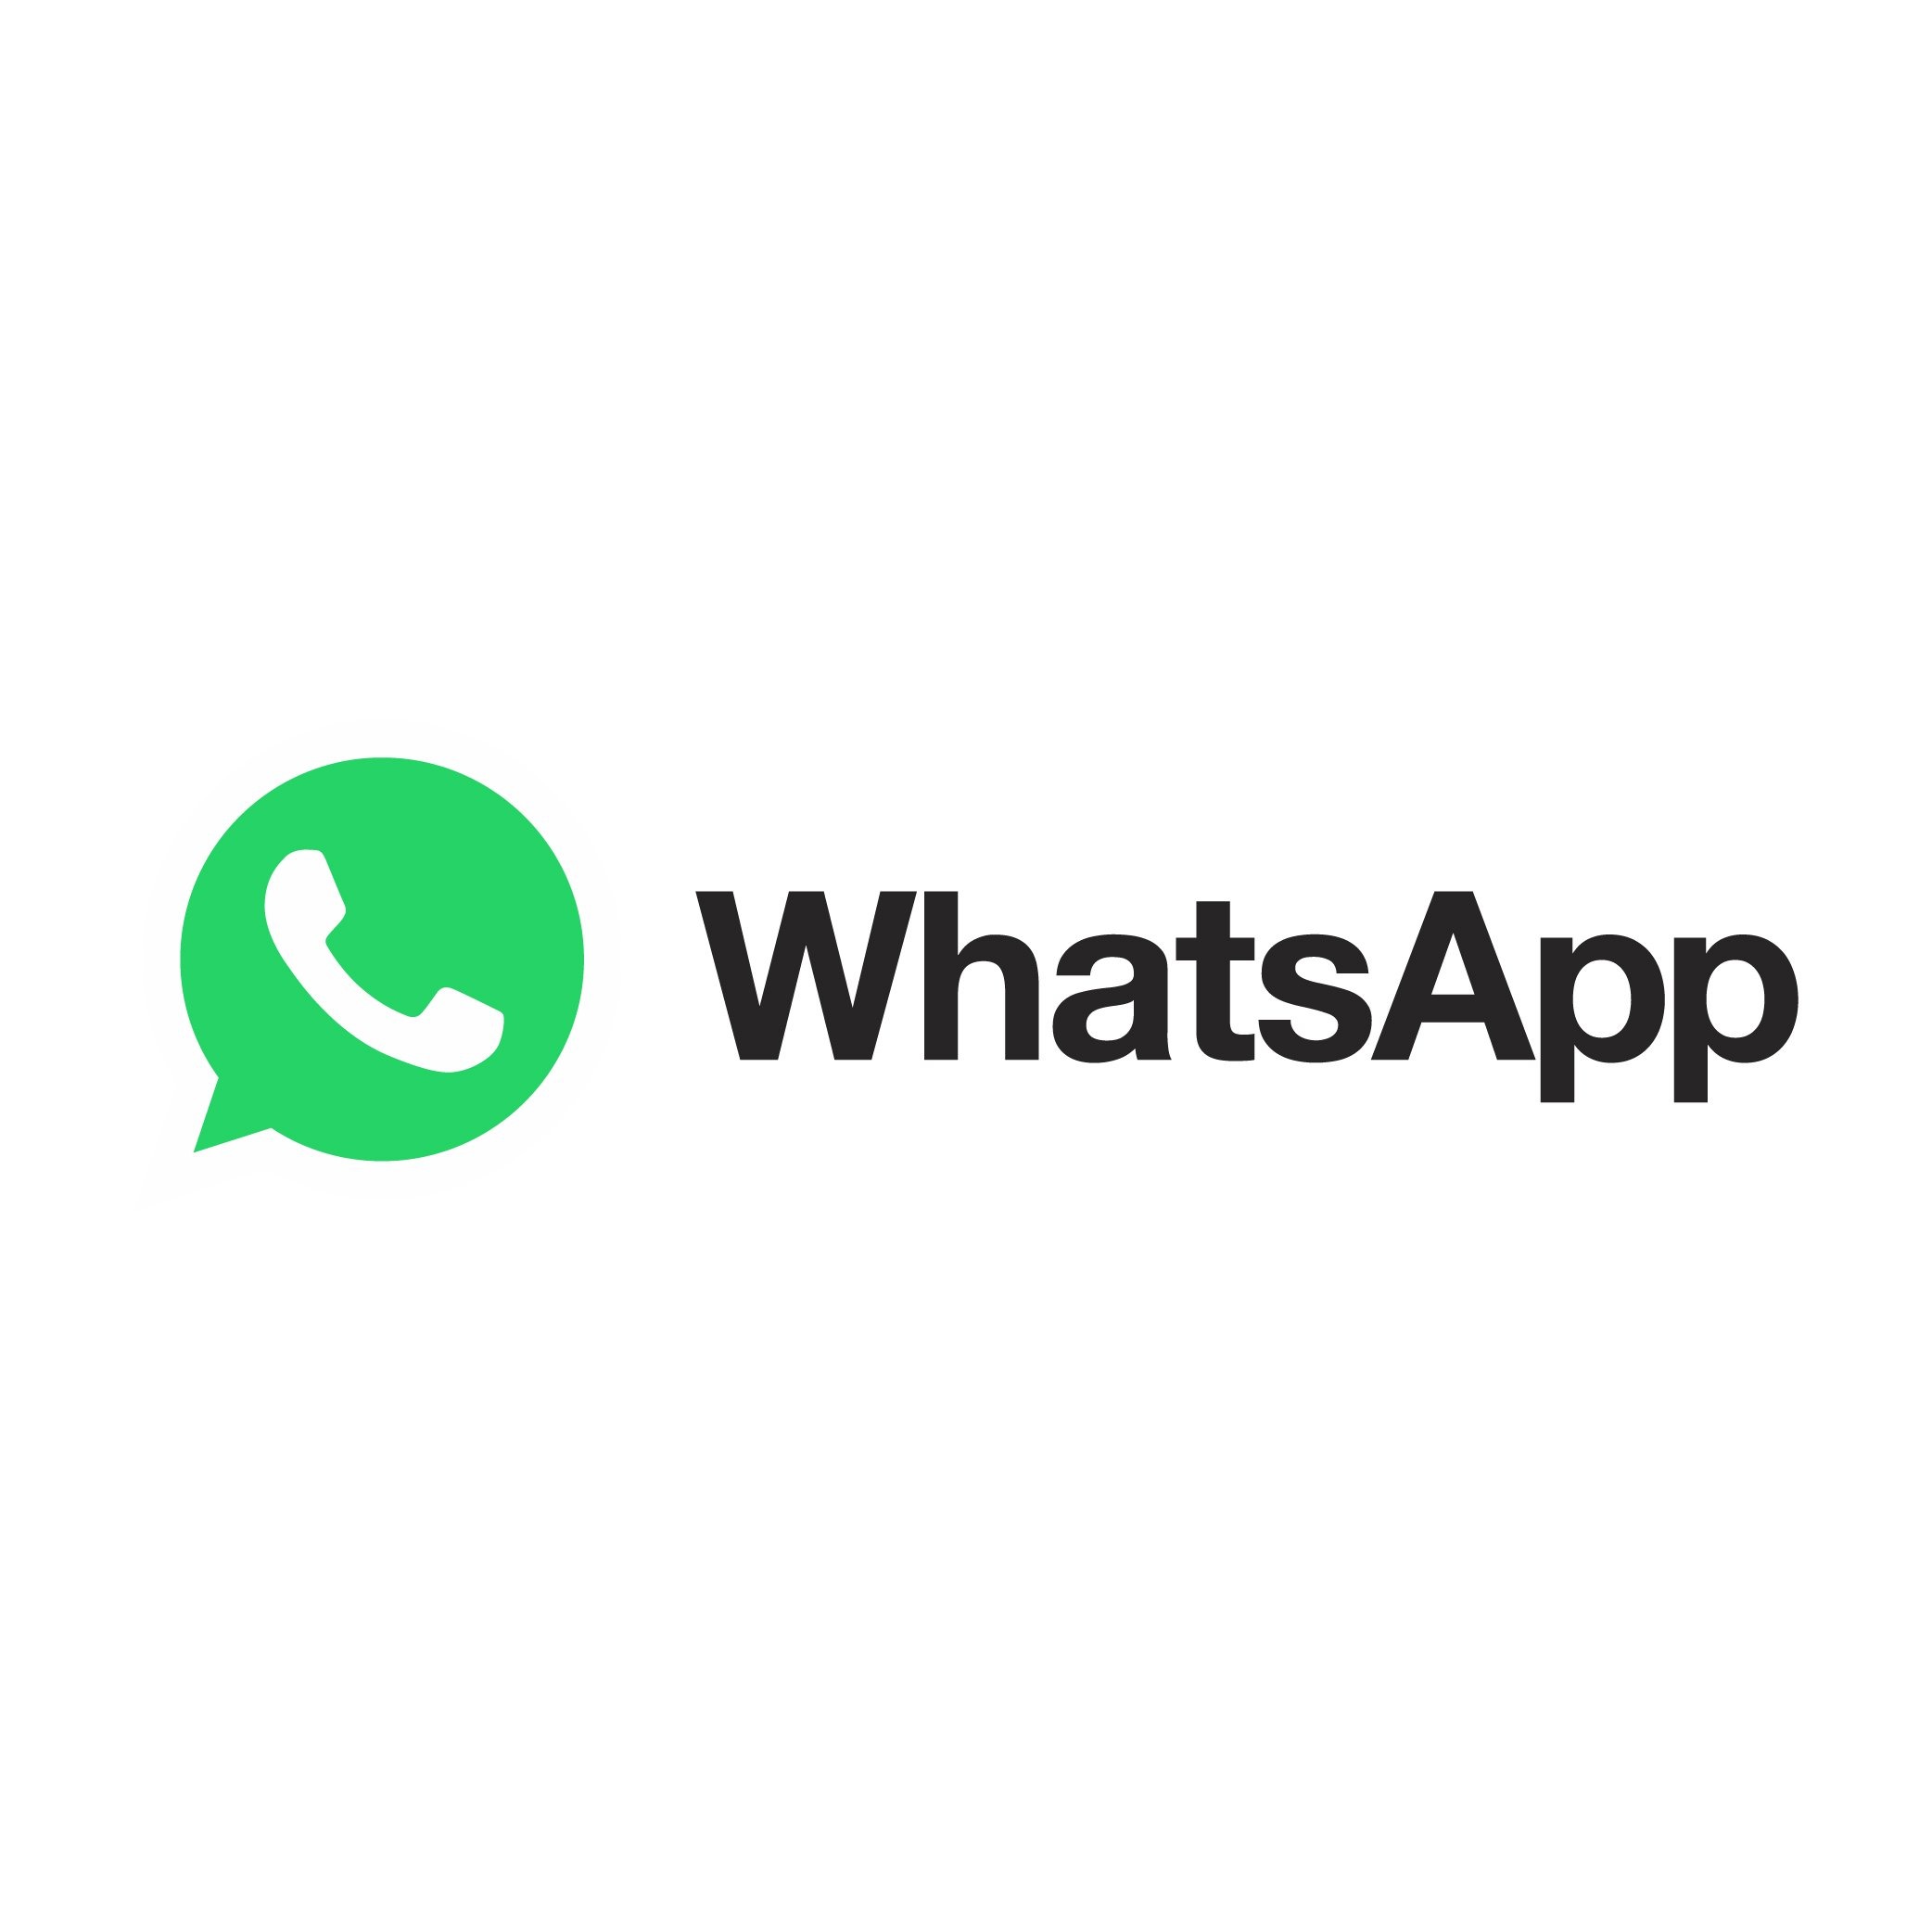 大量注册 WhatsApp 账户：企业的营销新方式